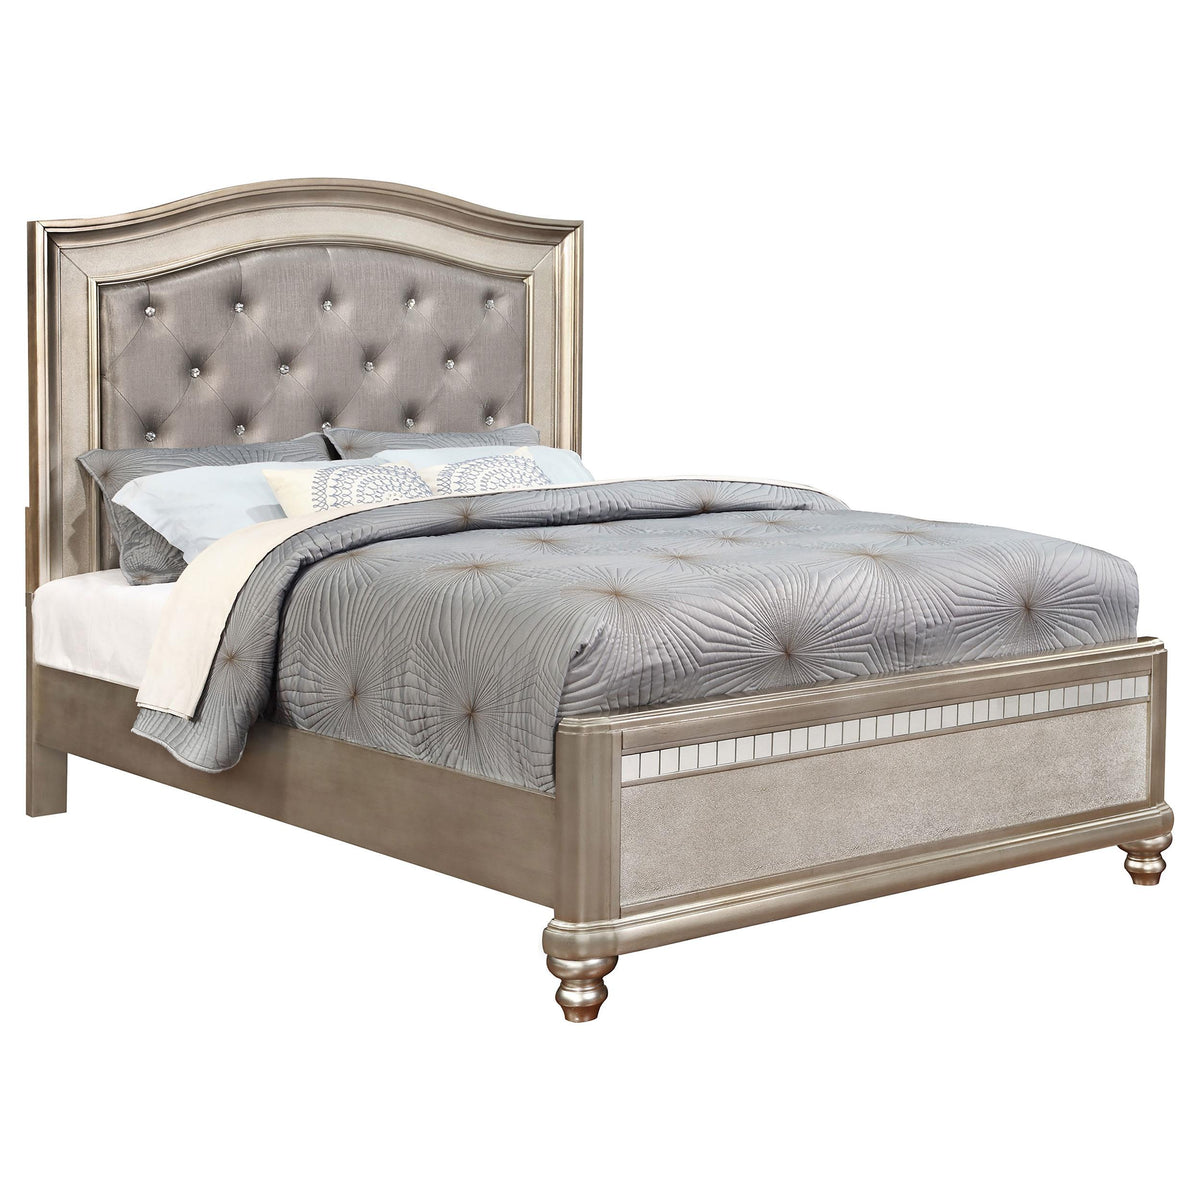 Bling Game Eastern King Panel Bed Metallic Platinum  Half Price Furniture